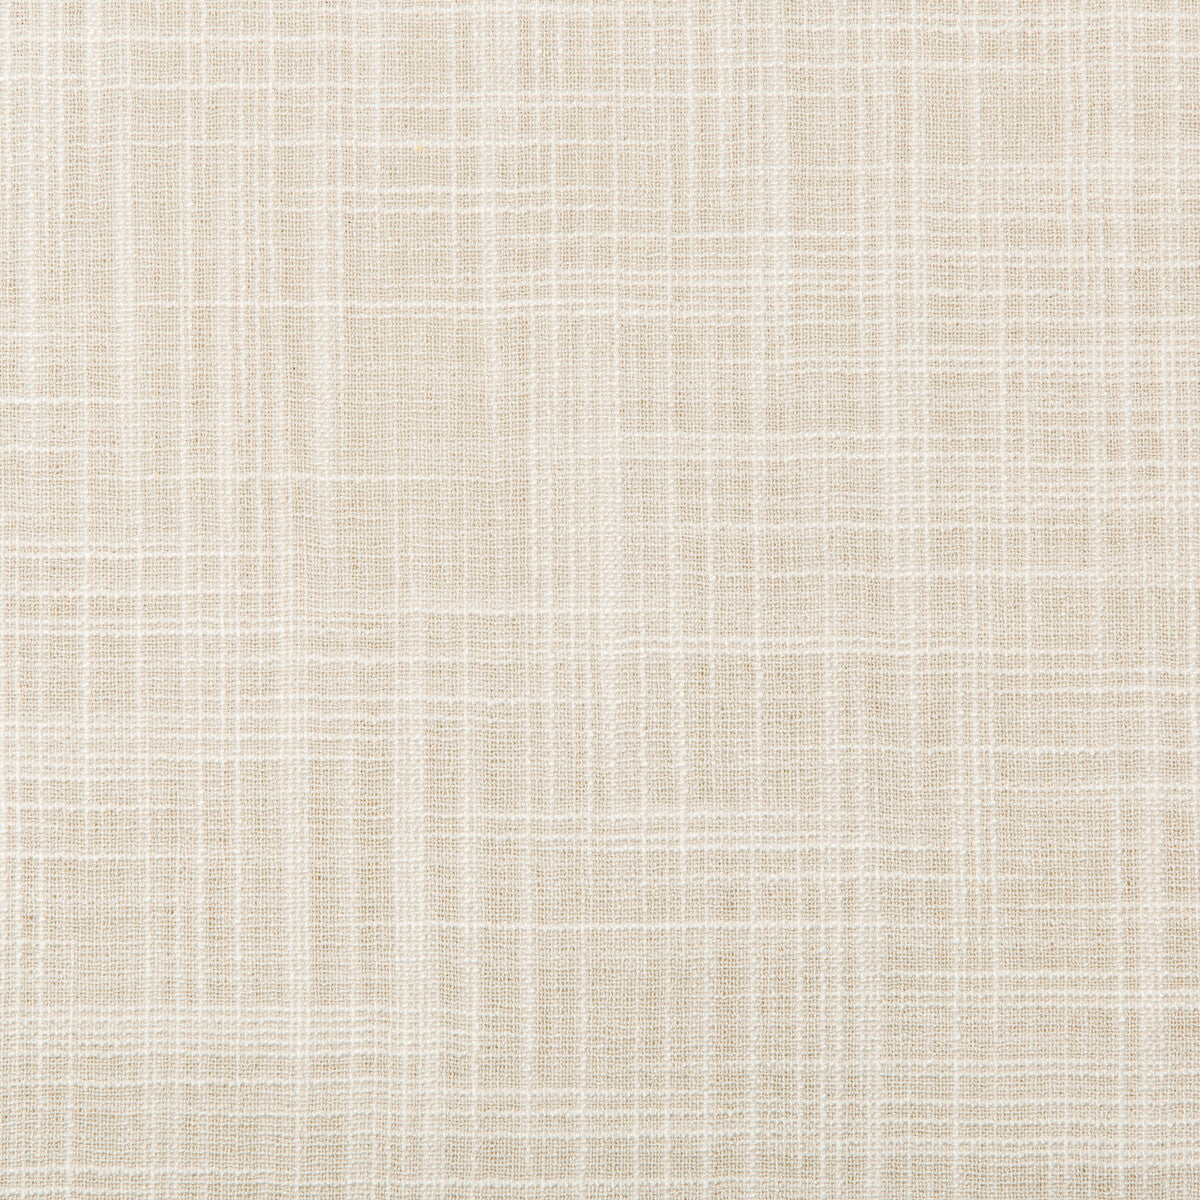 Kravet Basics fabric in 4674-11 color - pattern 4674.11.0 - by Kravet Basics